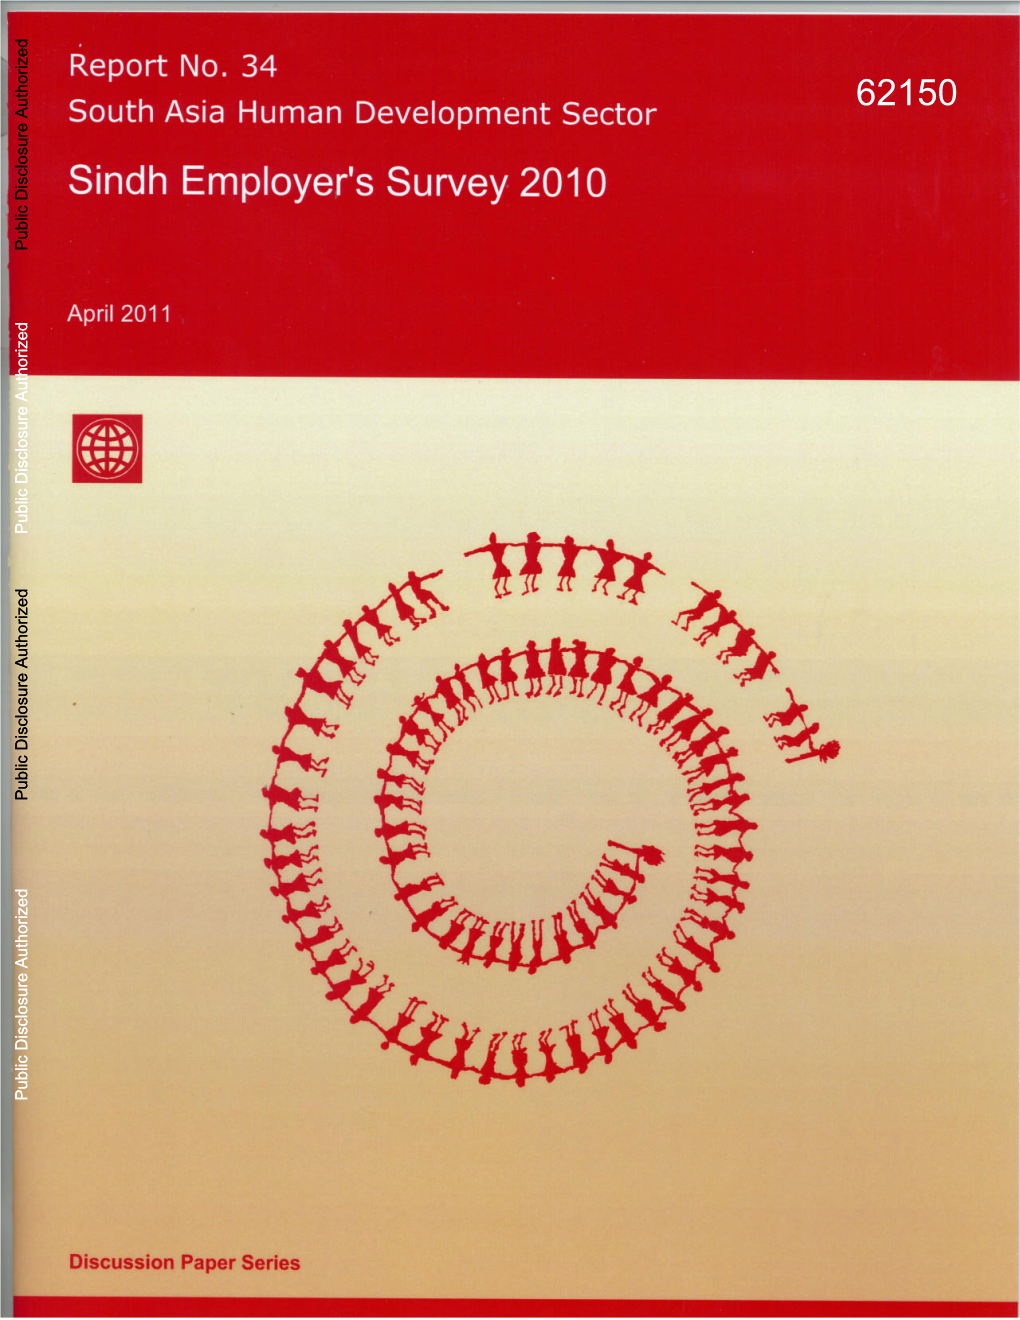 Sindh Employer's Survey 2010